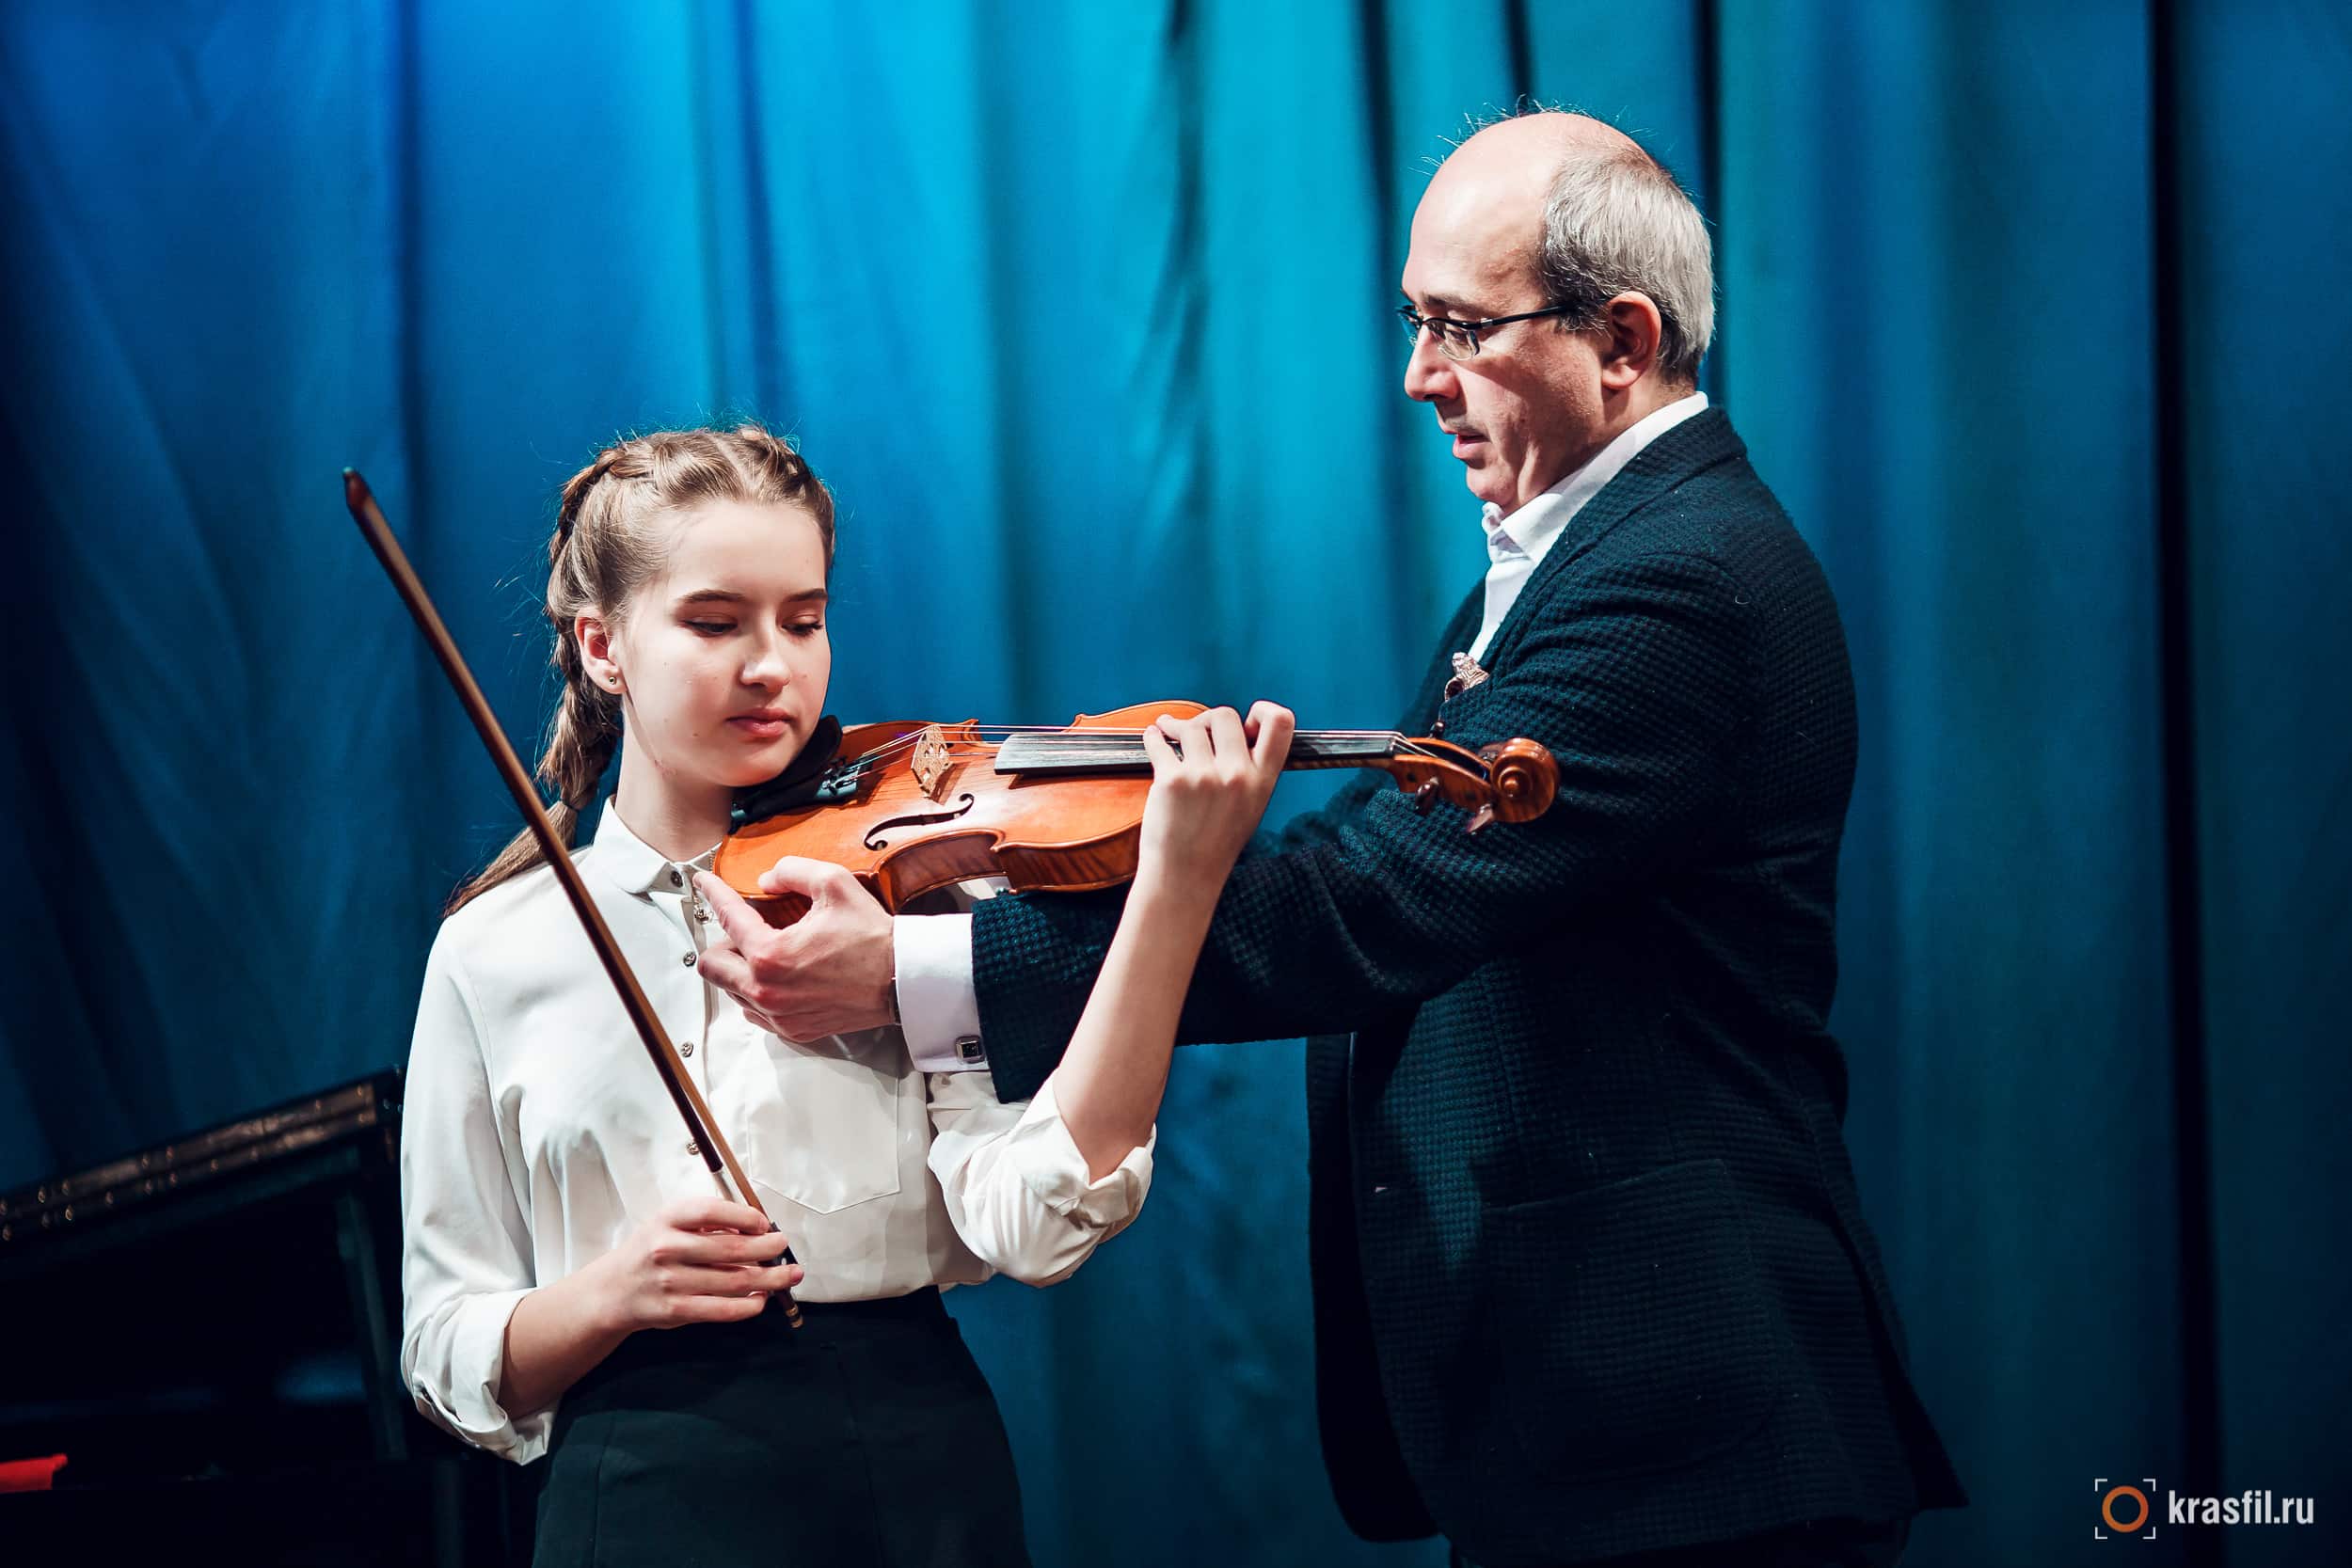 Сибирский юношеский оркестр: от идеи до первого шага